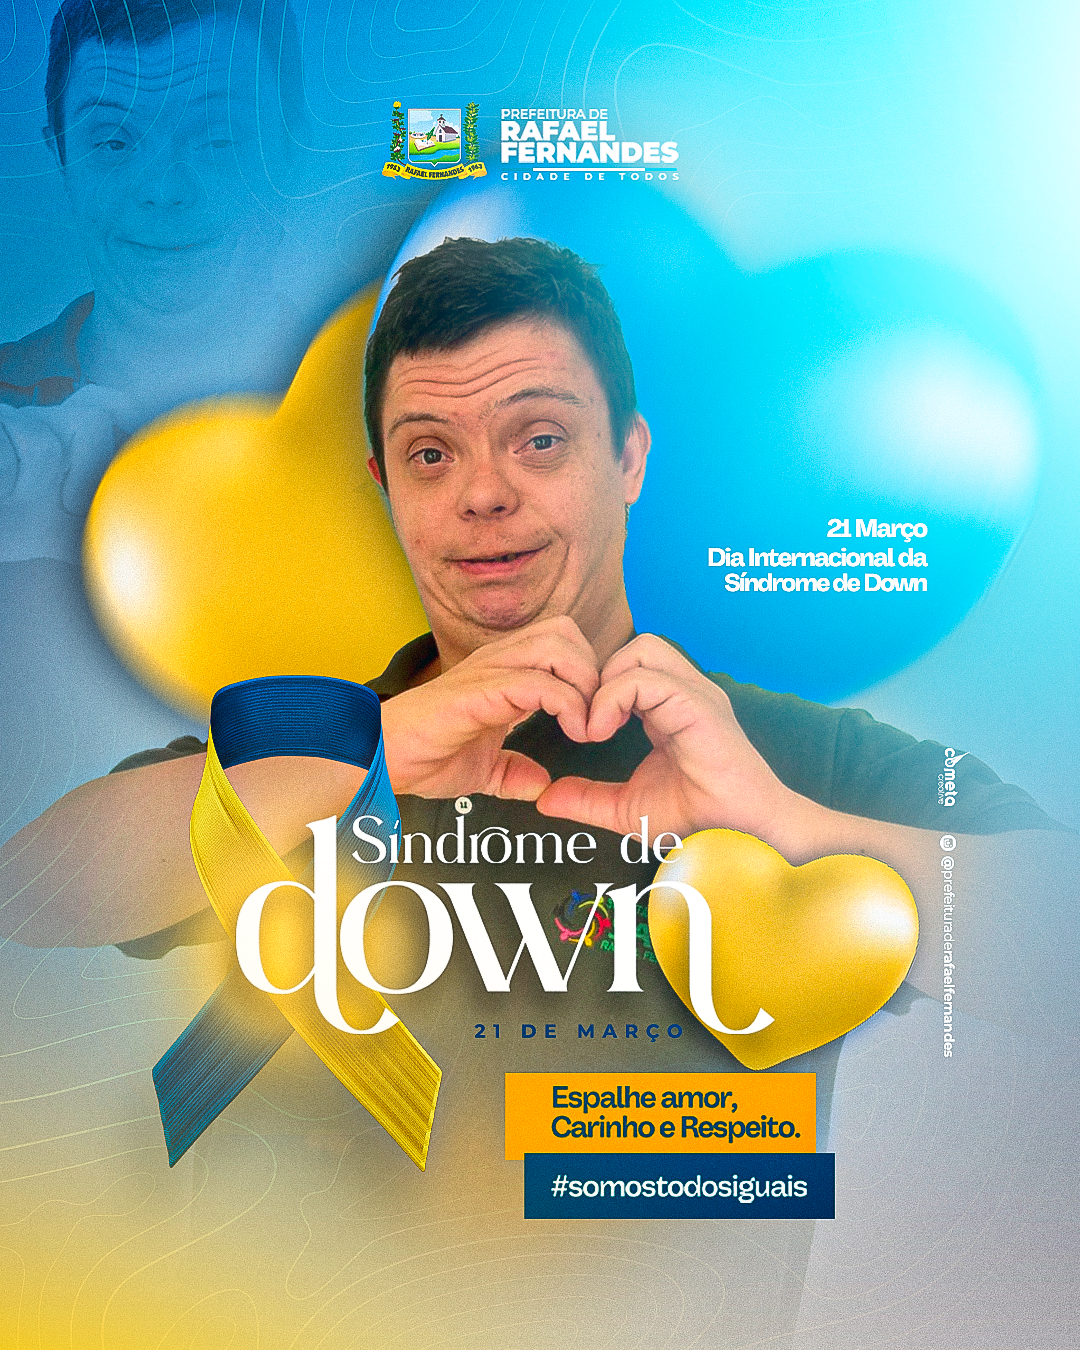 Hoje dia 21 de março, celebramos o Dia Internacional da Síndrome de Down